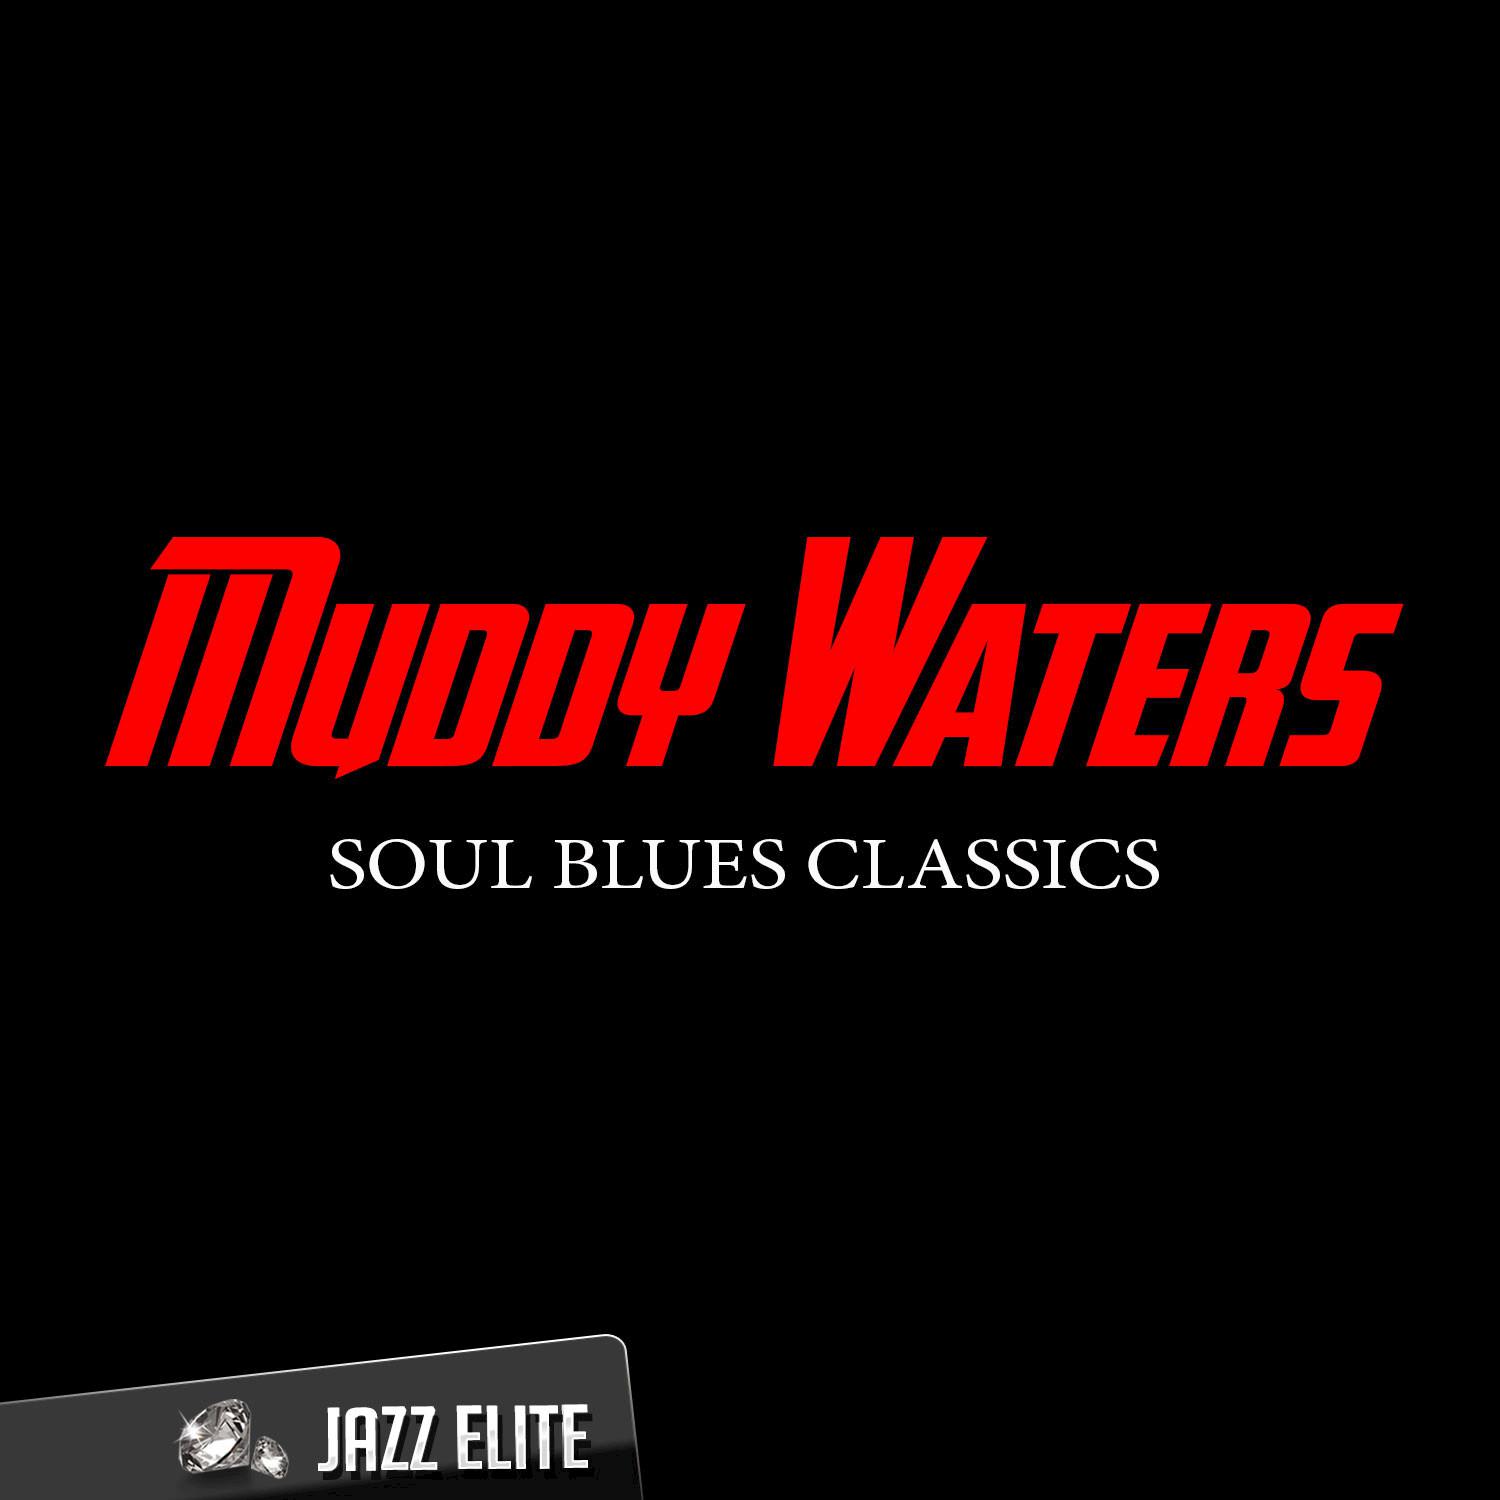 Soul Blues Classics